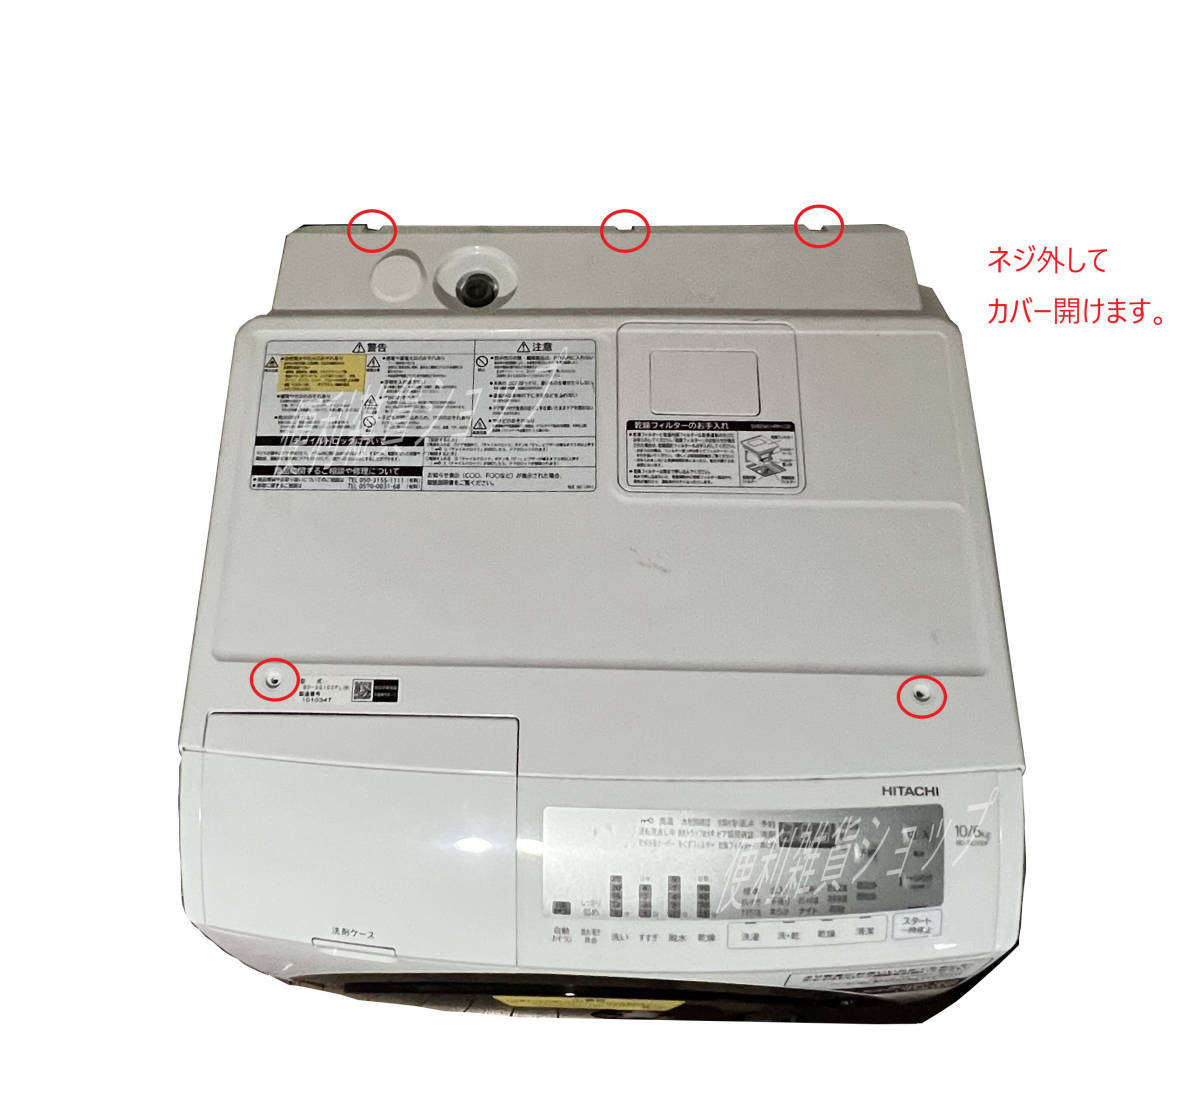 HITACHI ドラム式 洗濯乾燥機 BD-SG100FL エラー F19 DIY修理交換部品 メイン基板用冷却ファン NMB-MAT 2410EL-05W-M49 修理交換手順公開中の画像5